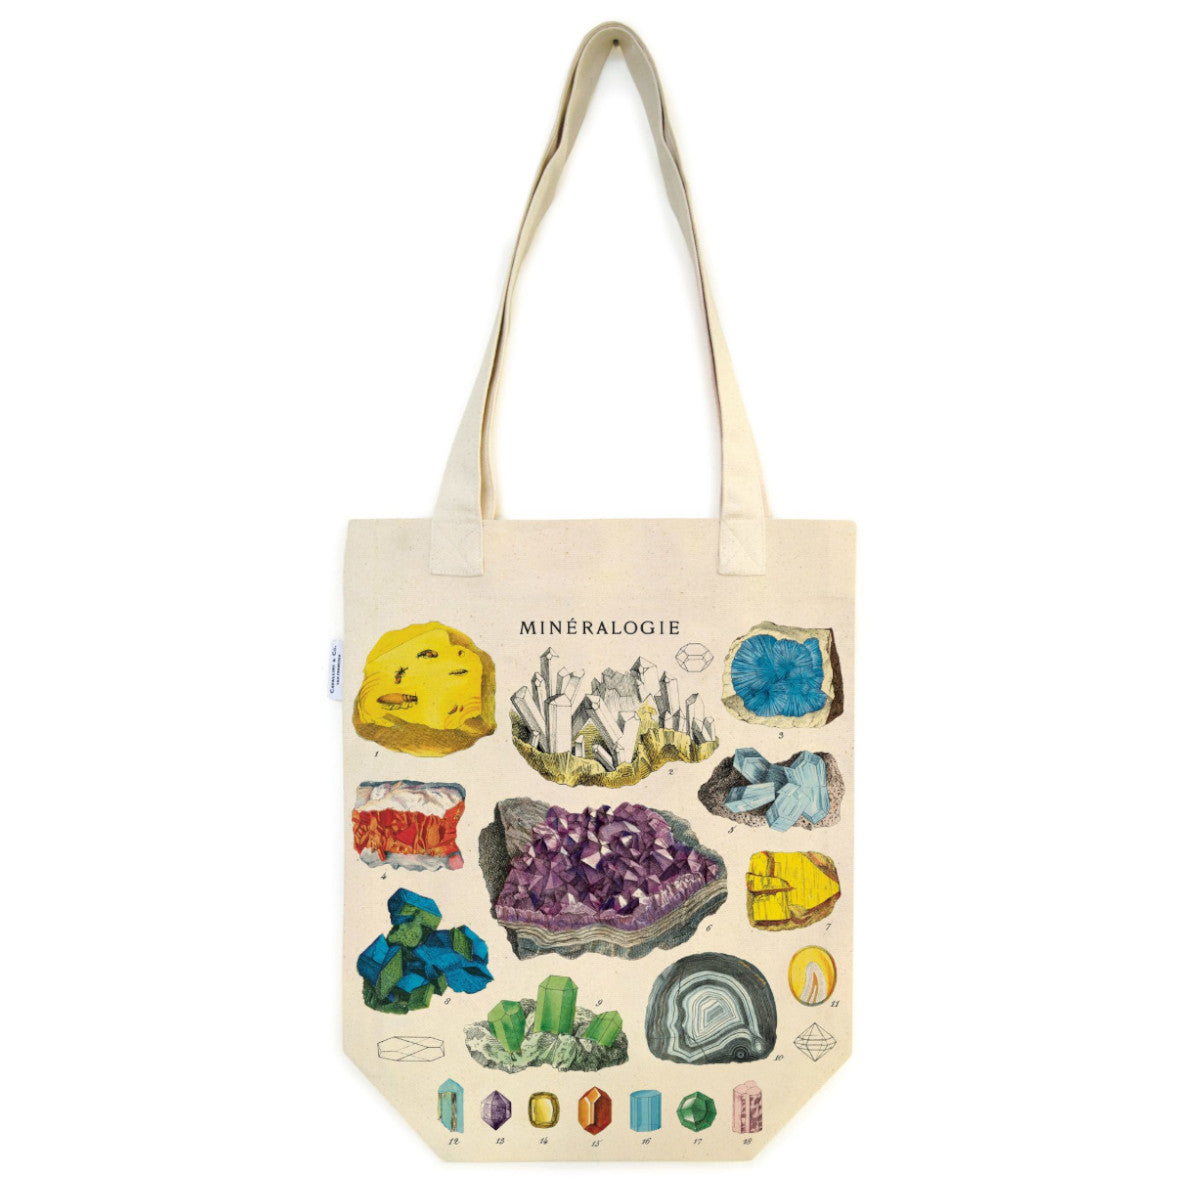 Vintage Tote Bag - Cavallini & Co.- Mineralogy